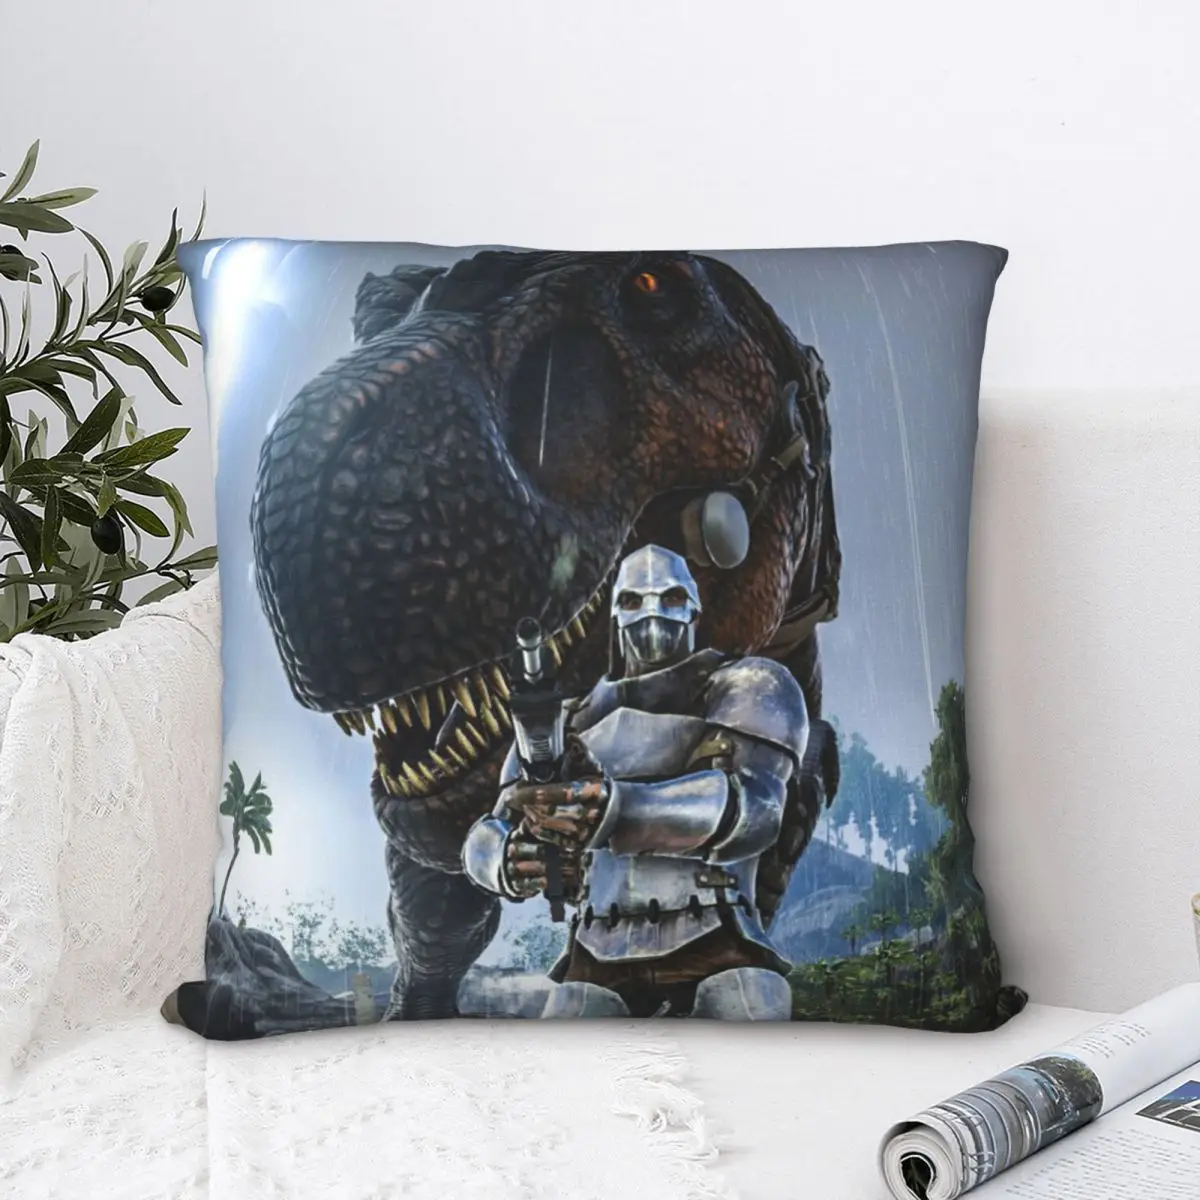 

Tribe Polyester Cushion Cover ARK Survival Evolved Dinosaur ARPG Games For Livingroom Office Decorative Soft Hug Pillowcase